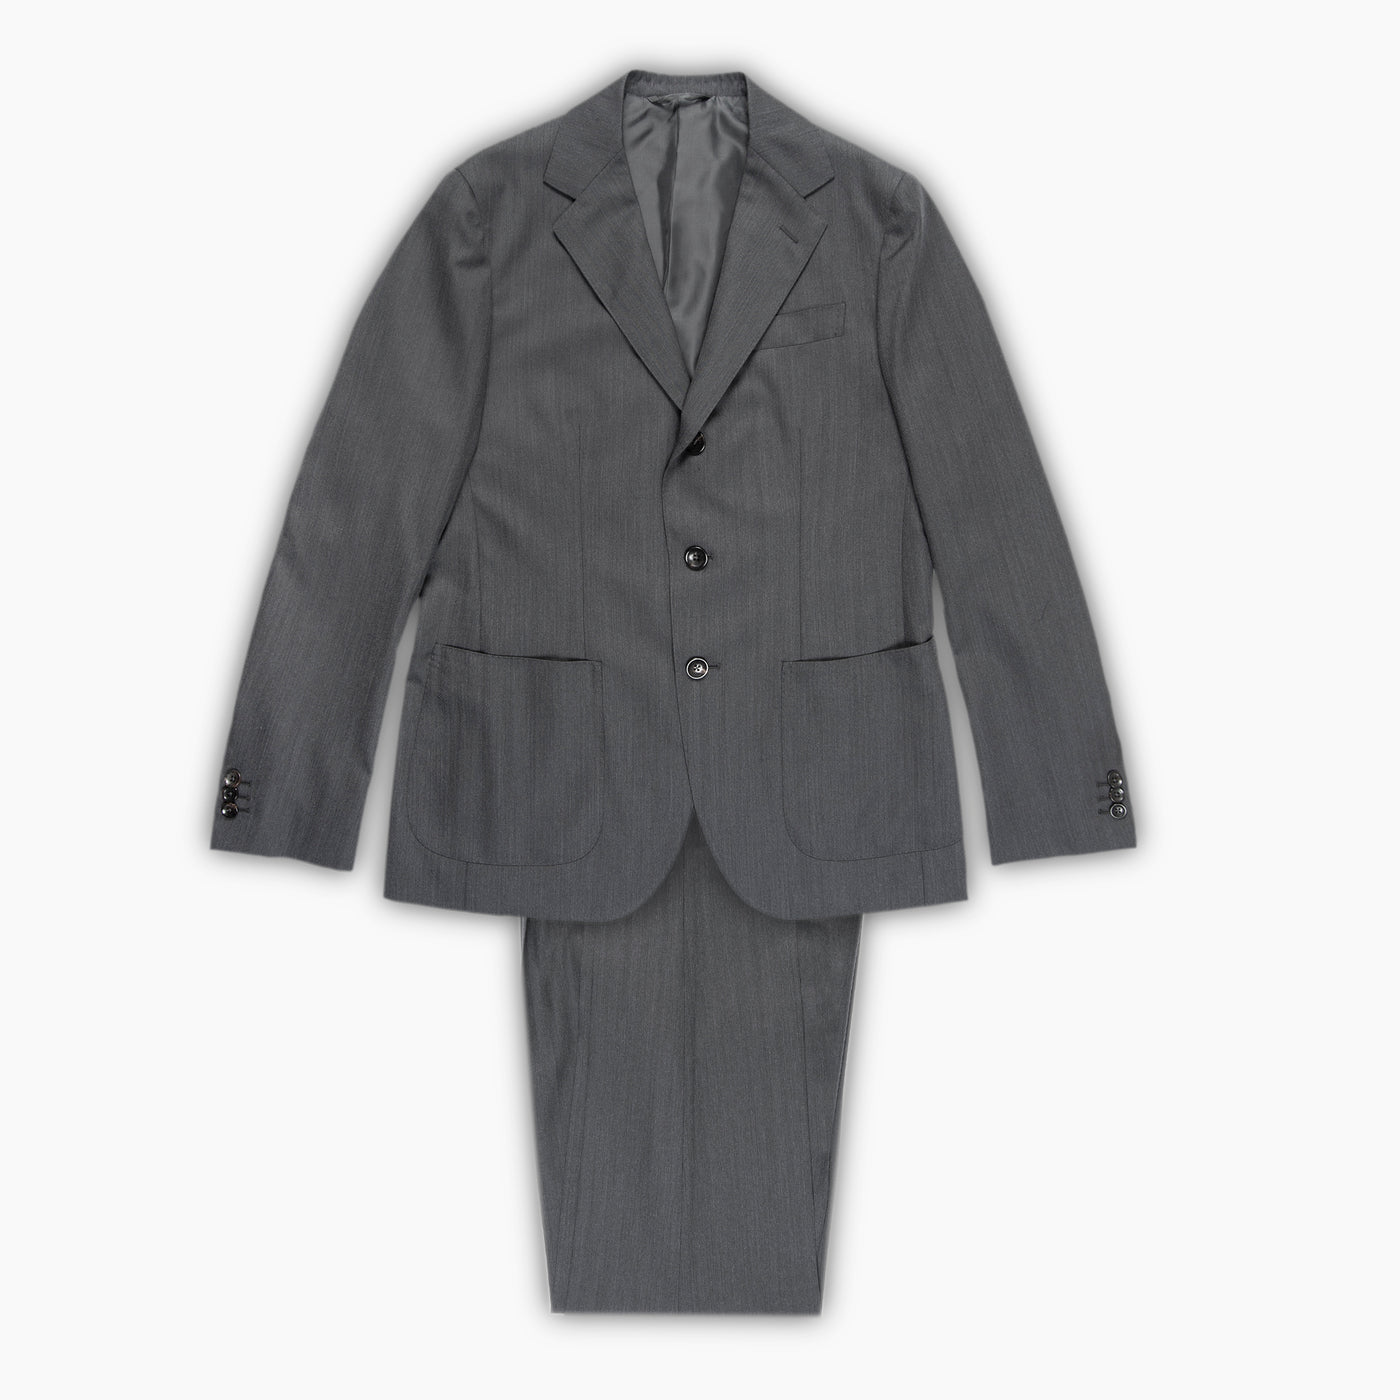 Suit Blazer and Pant in elegance herringbone wool 17 micron